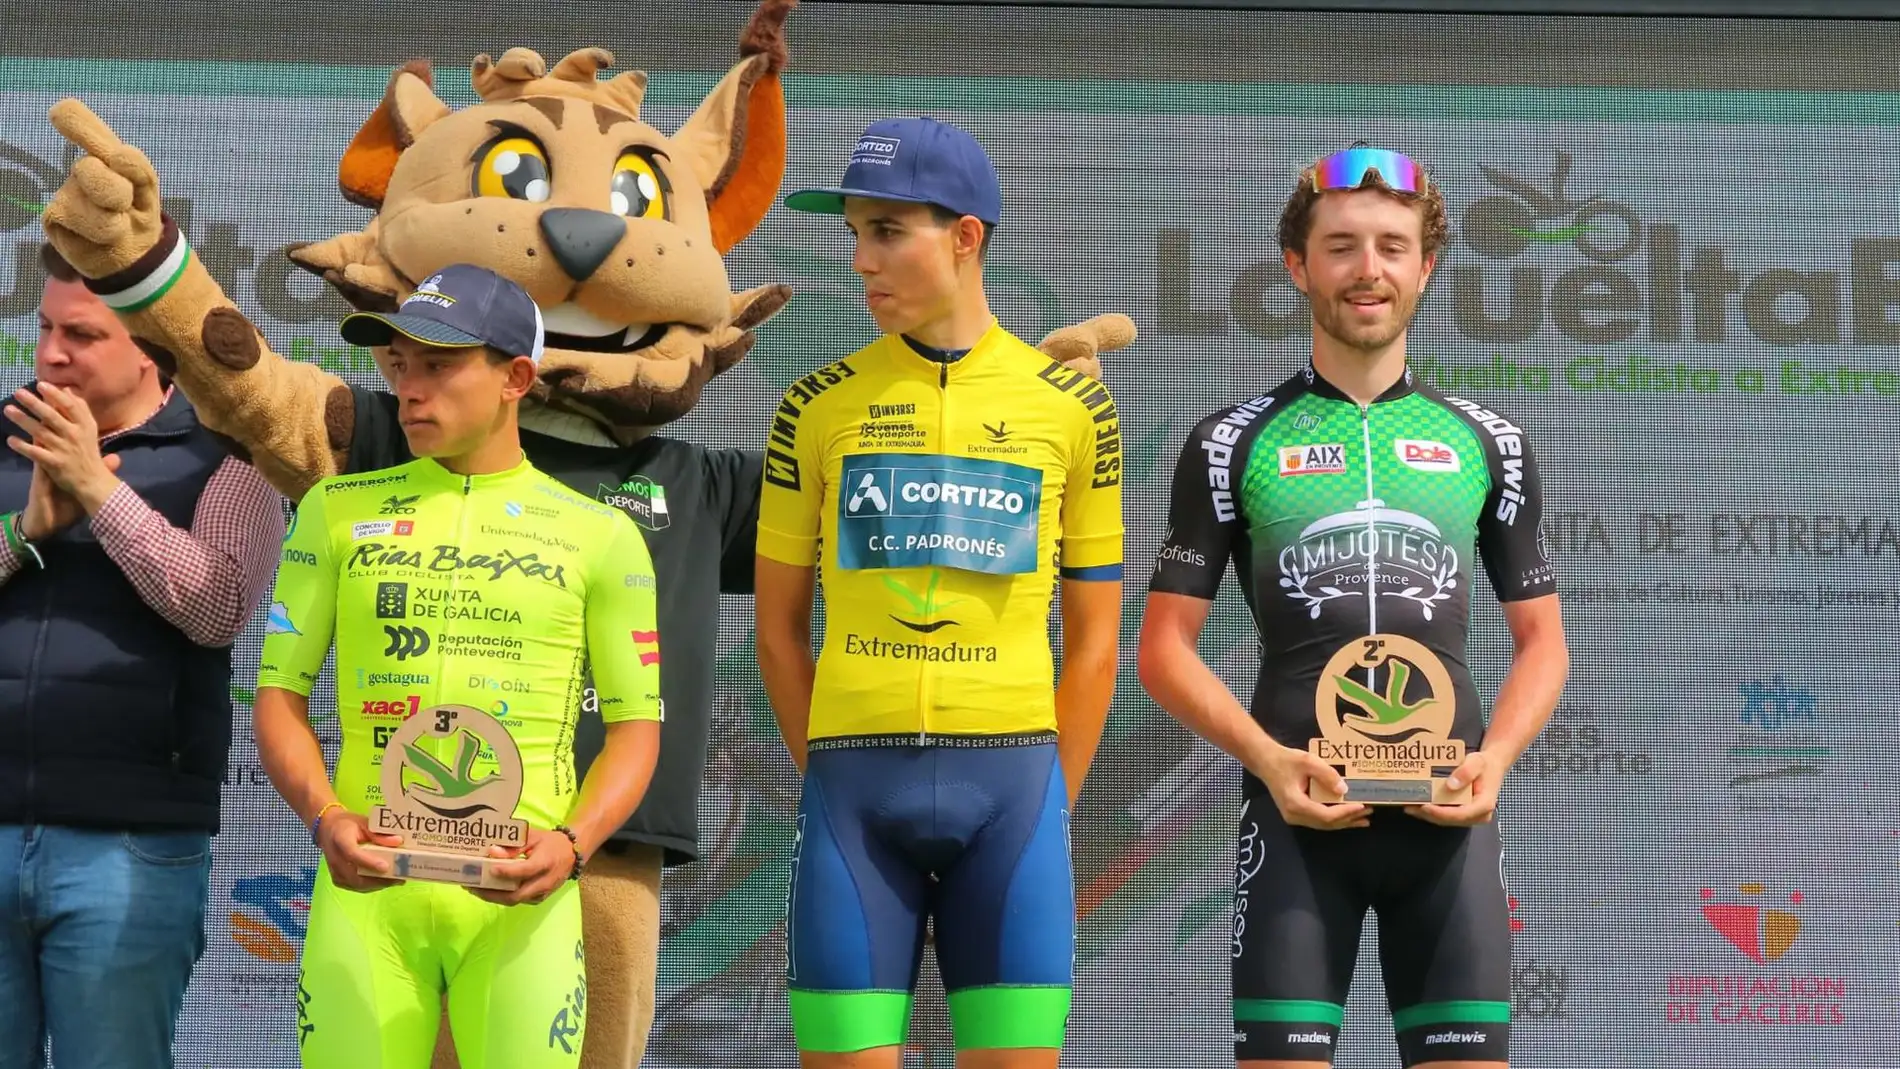 El murciano José Luis Faura, del equipo Cortizo, ganador de la Vuelta Ciclista a Extremadura